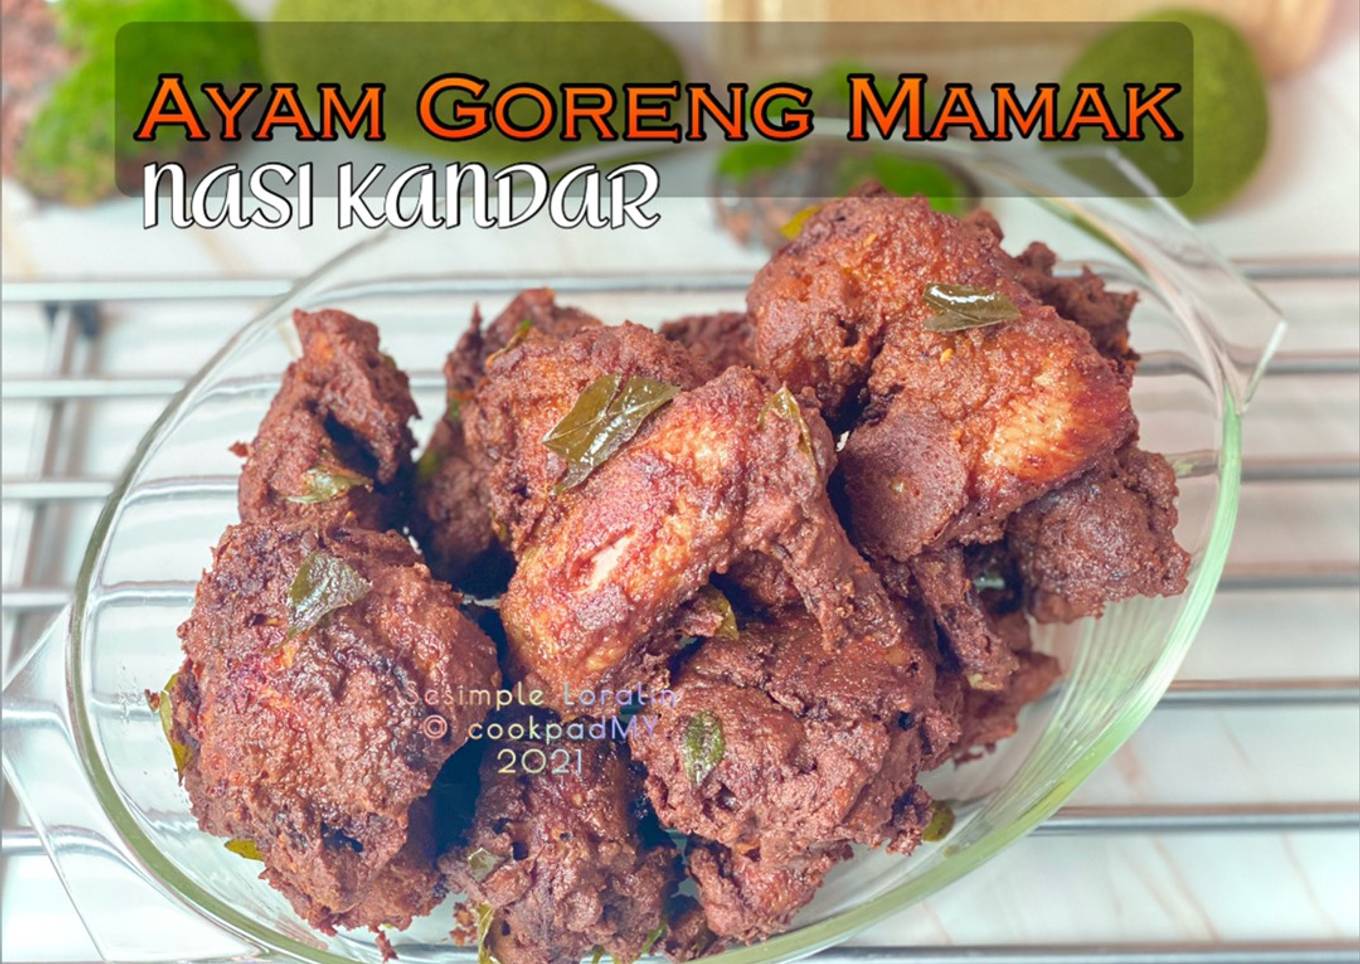 Ayam Goreng Mamak (Set Nasi Kandar)